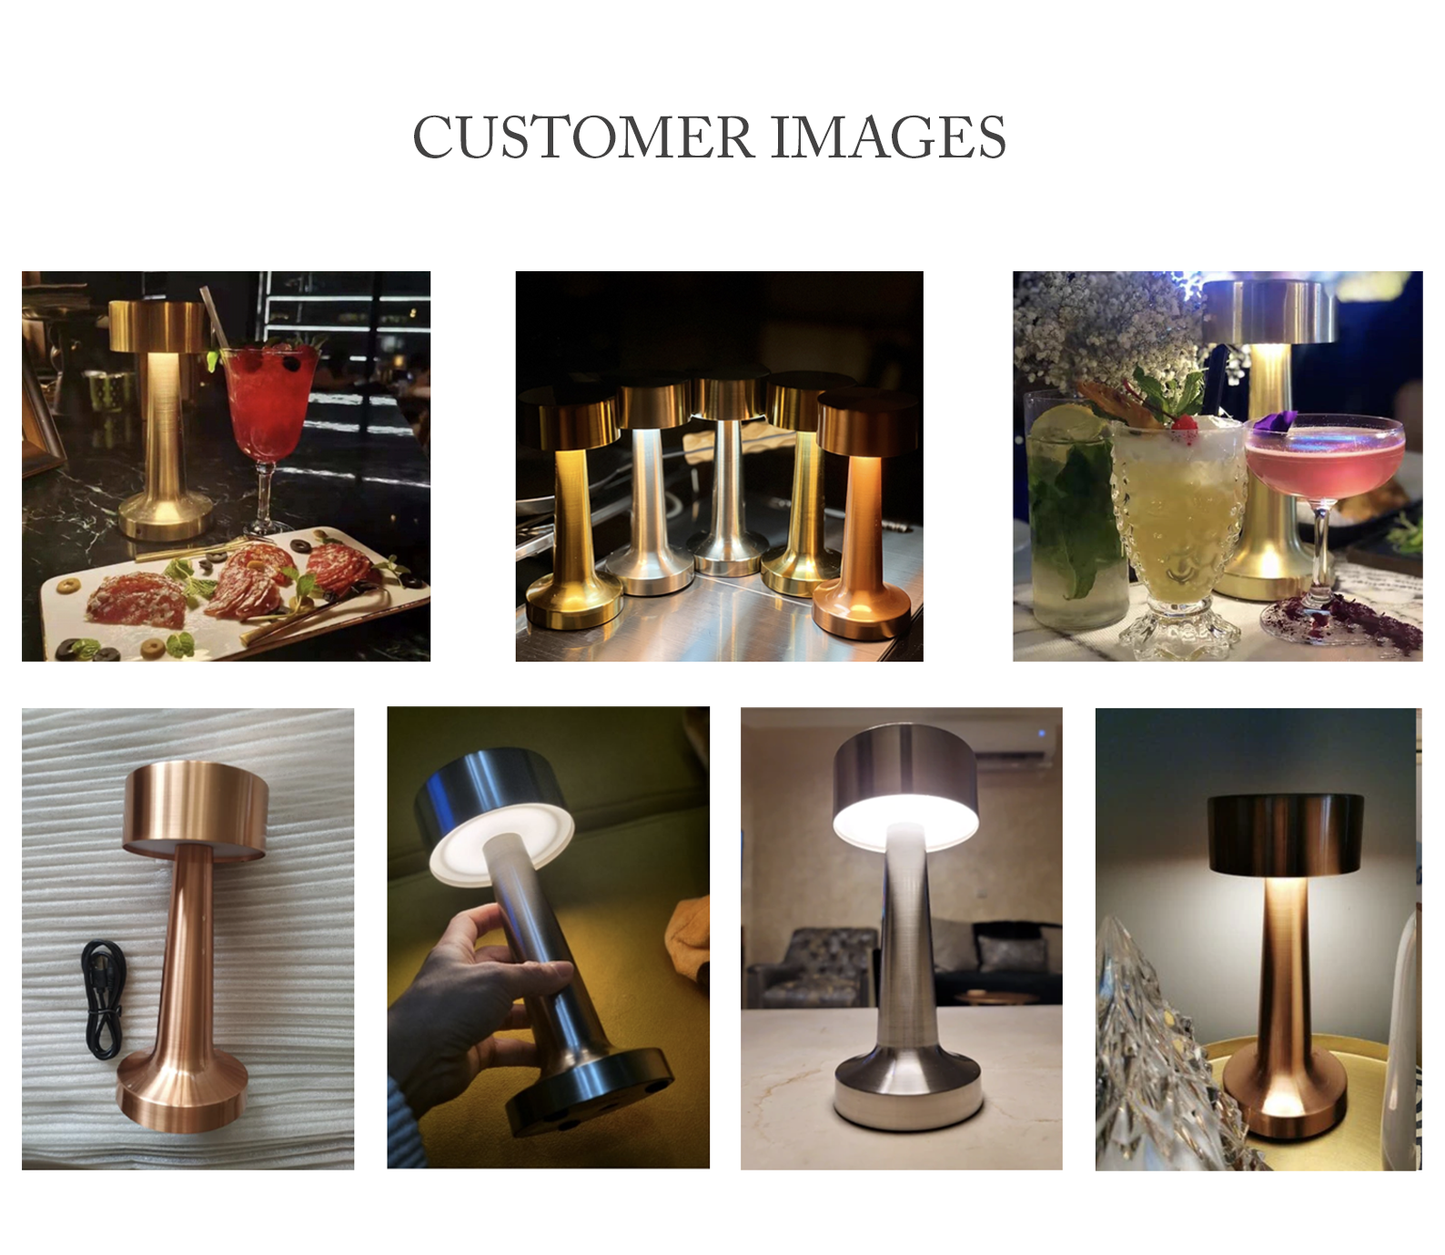 Lampes de table portables minimalistes x 10, 10 % de réduction - 4 couleurs